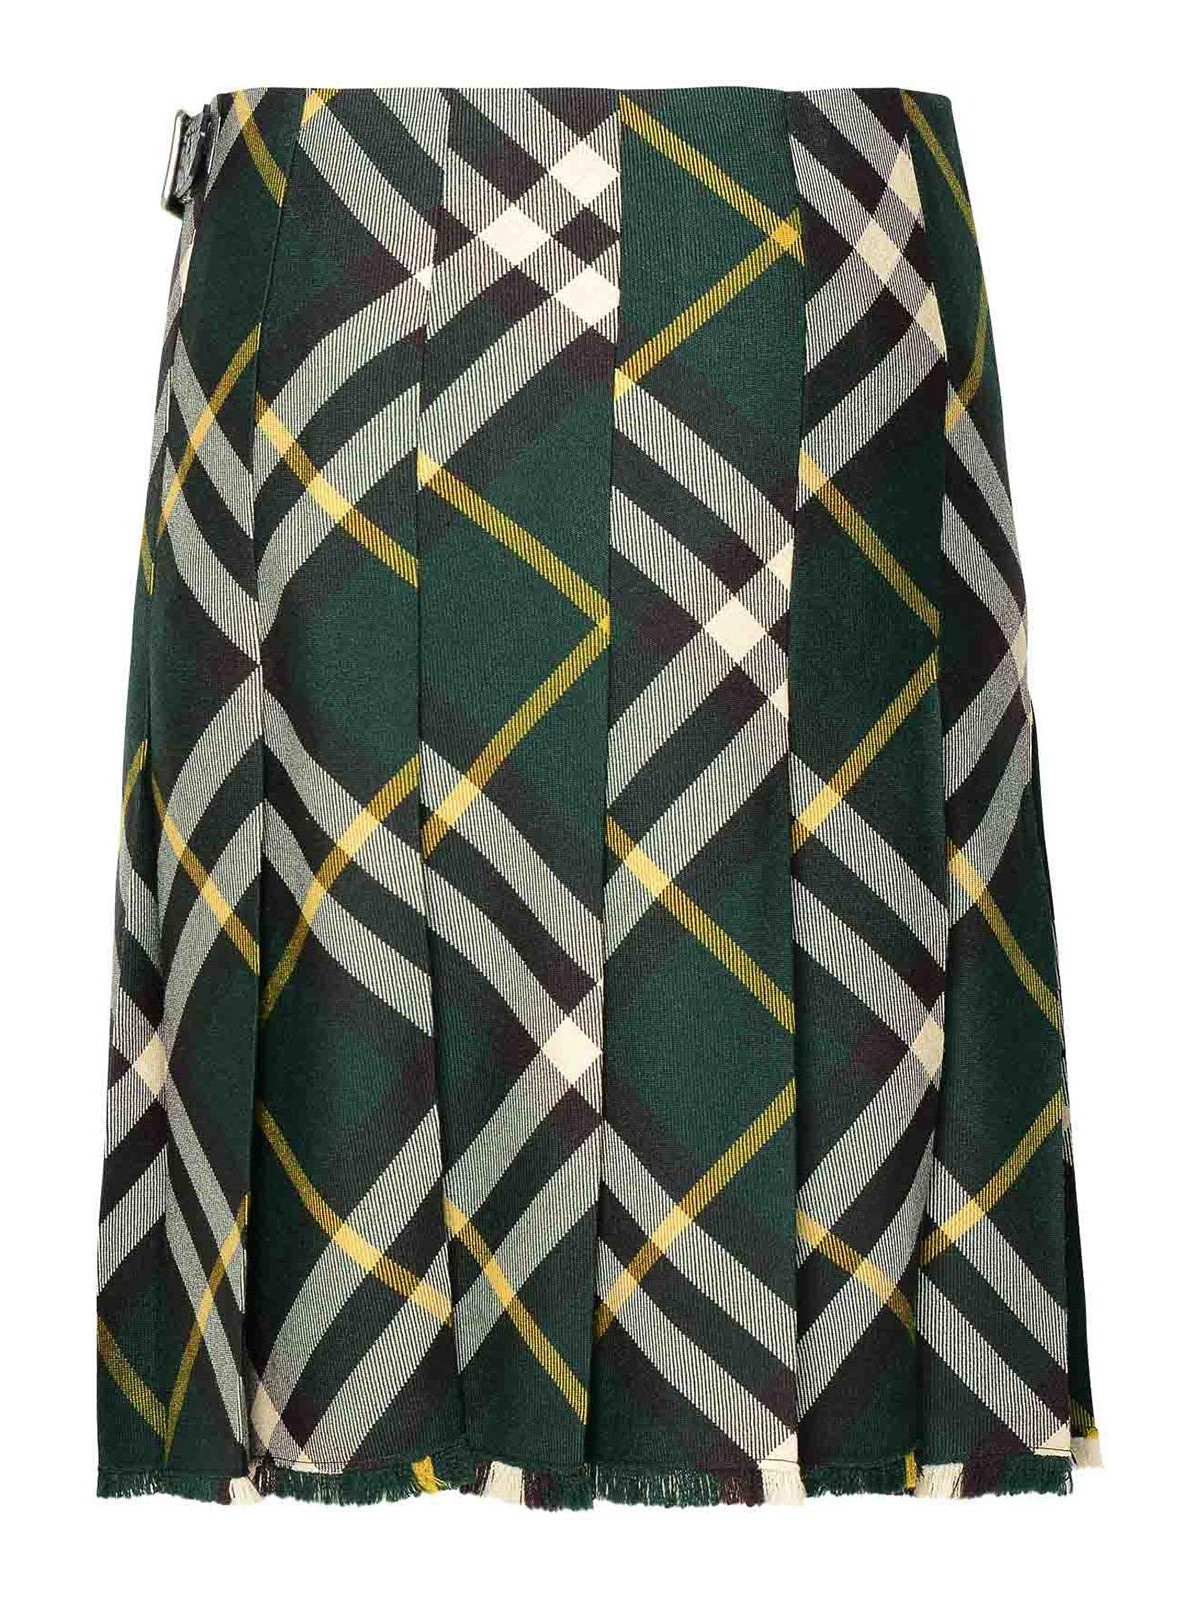 Shop Burberry Green Wool Skirt